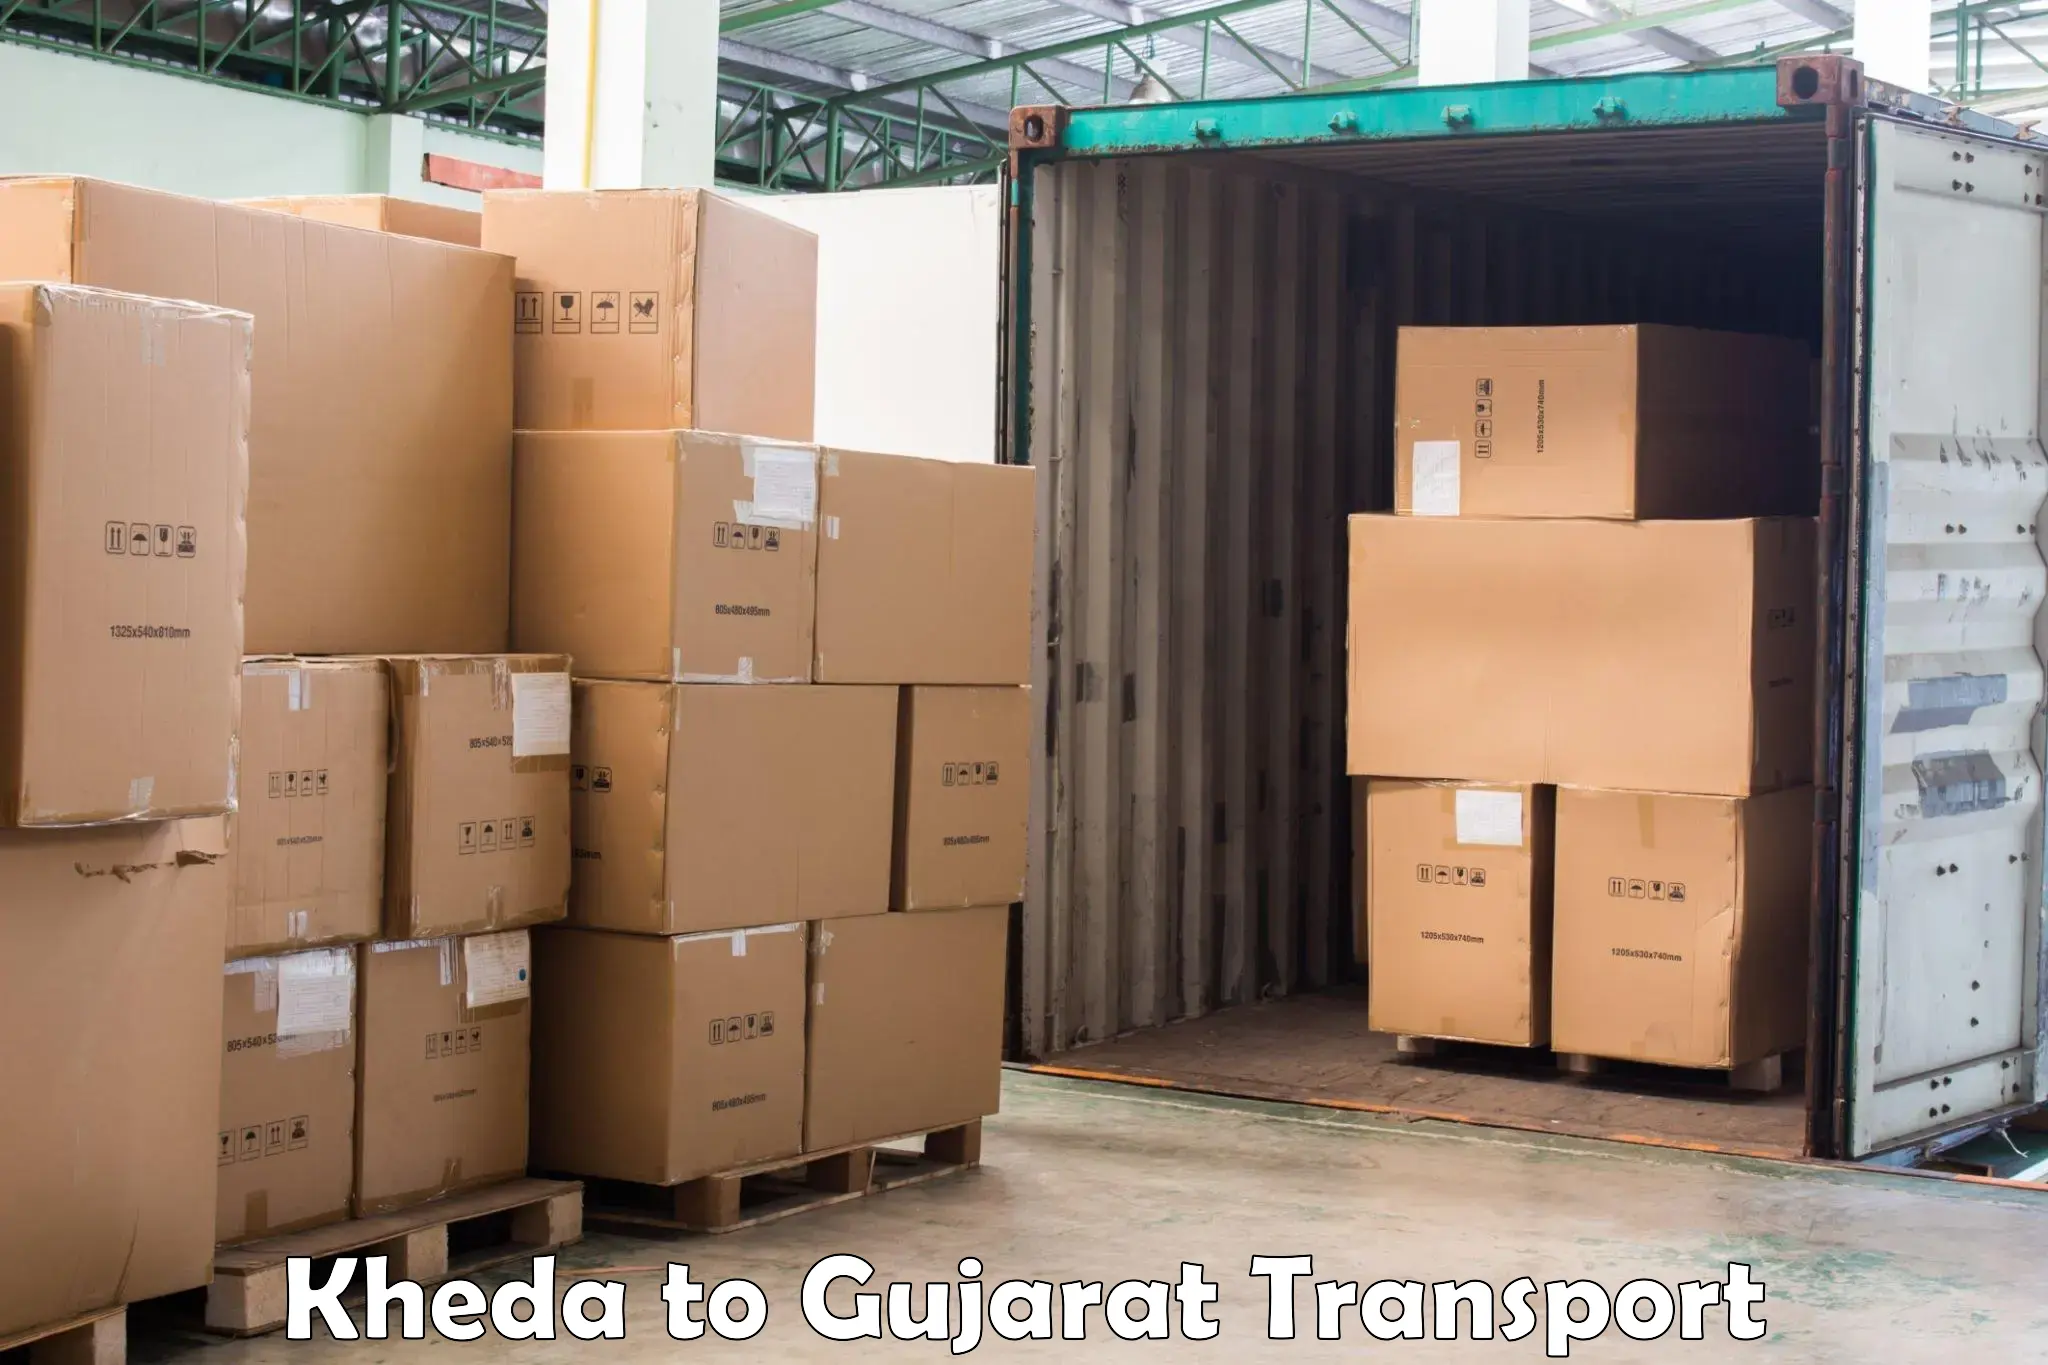 Online transport service Kheda to Bhachau